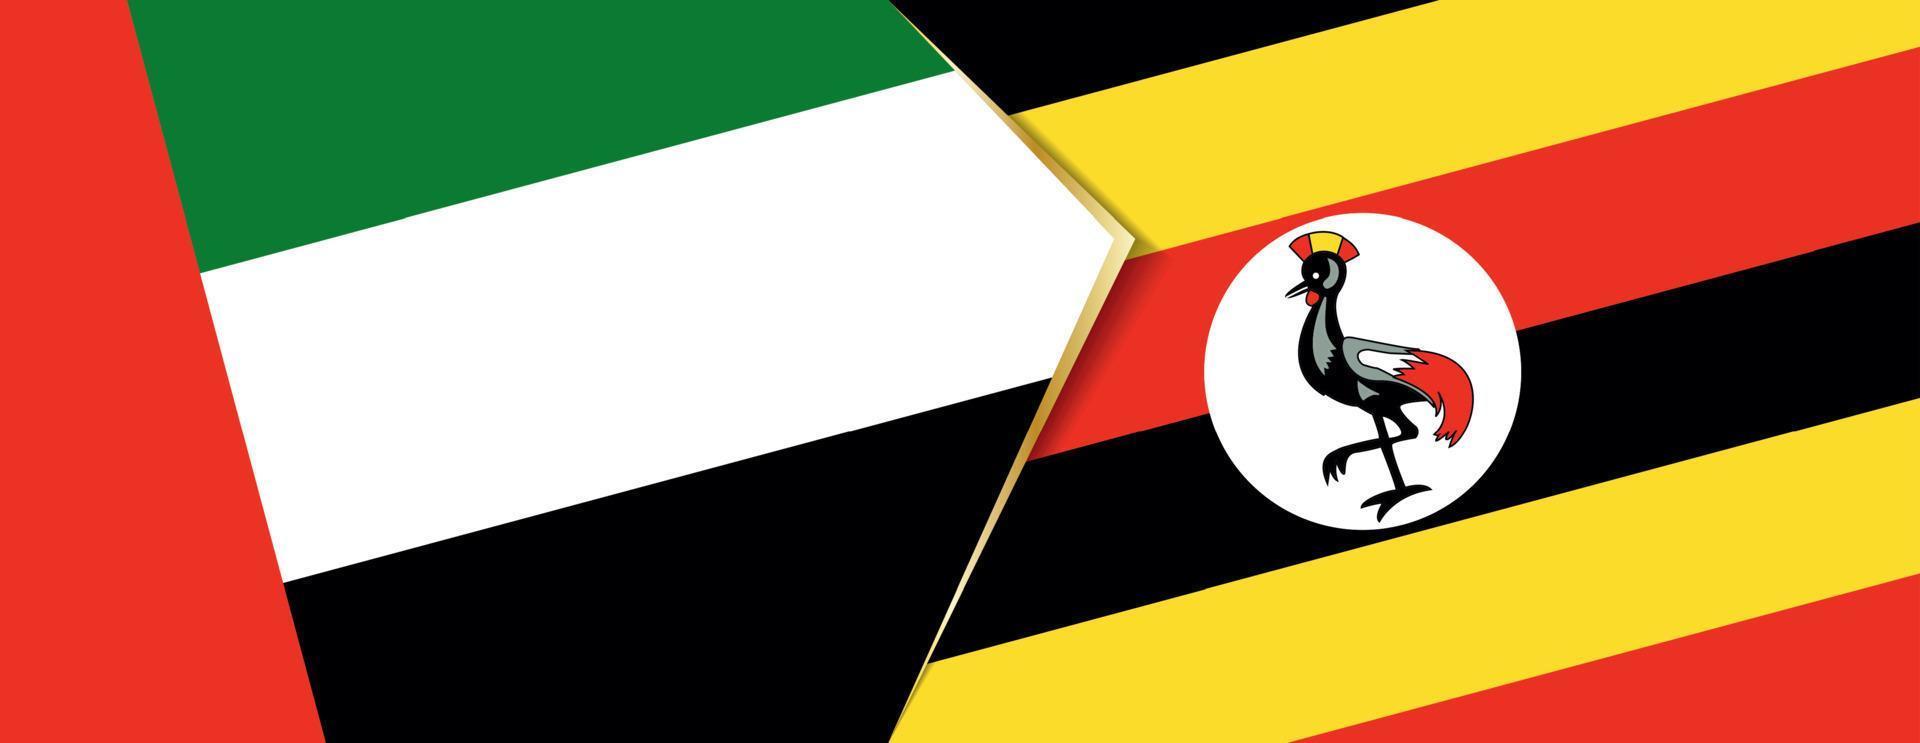 unito arabo Emirates e Uganda bandiere, Due vettore bandiere.